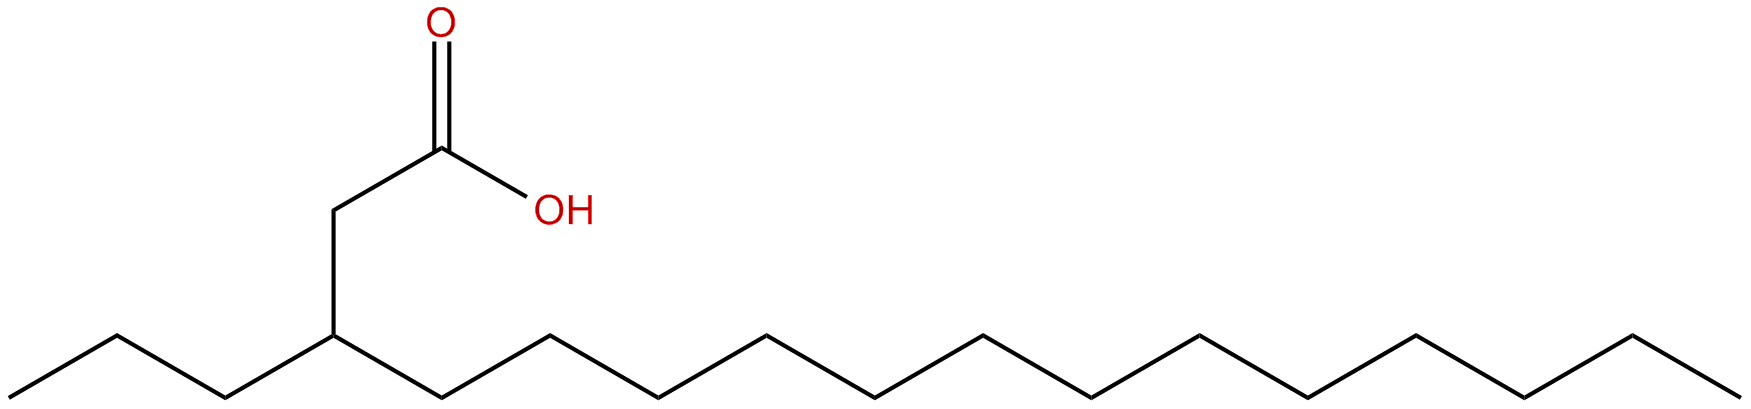 Image of 3-propylhexadecanoic acid